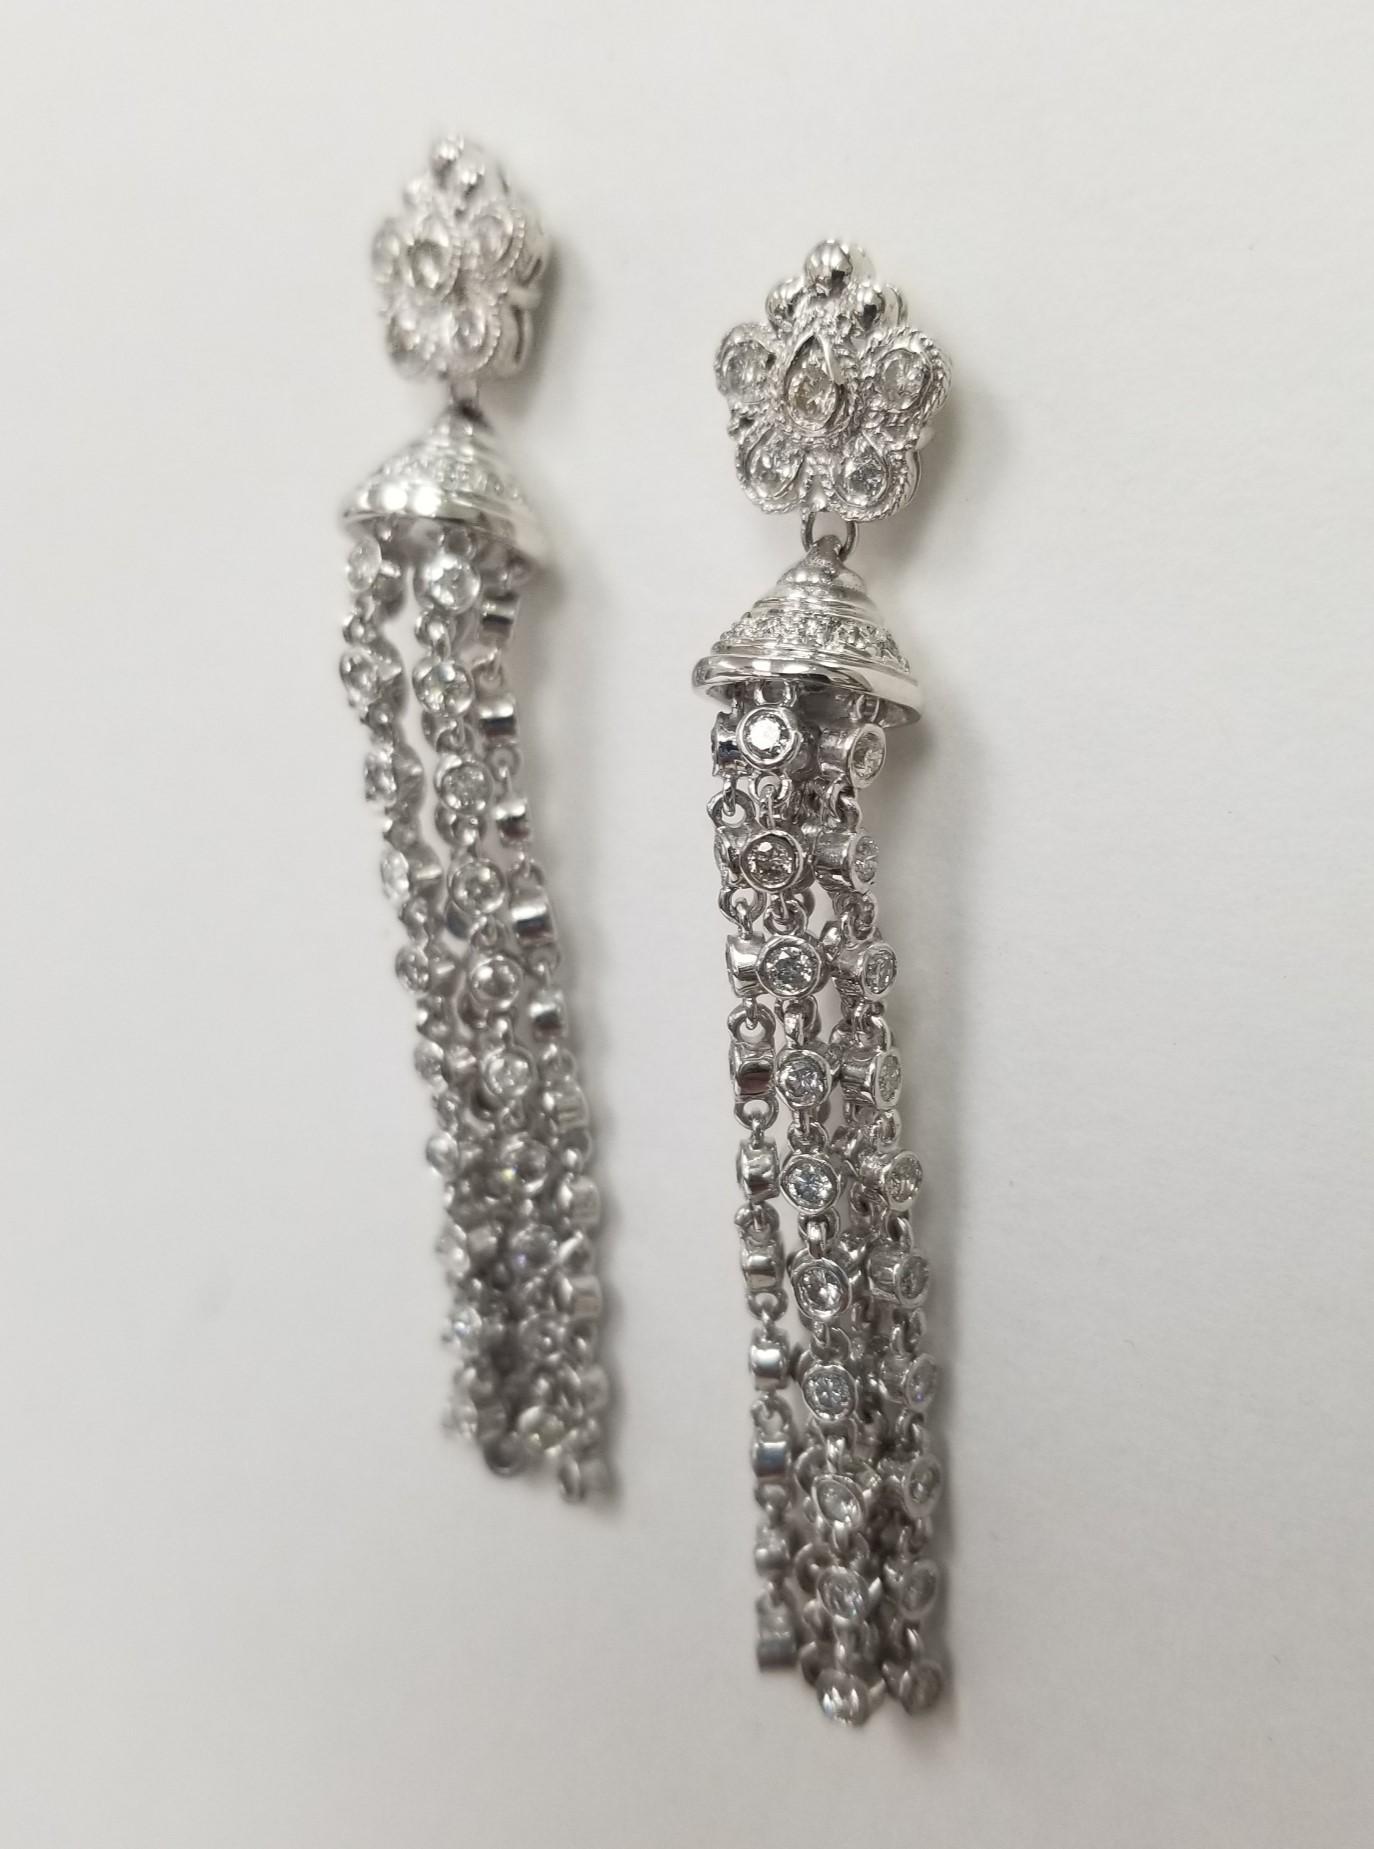 Boucles d'oreilles pendantes en or blanc 14k contenant 132 diamants ronds de pleine taille pesant 3,75cts. et  2 pouces de diamants sertis en chaton pendent d'une 